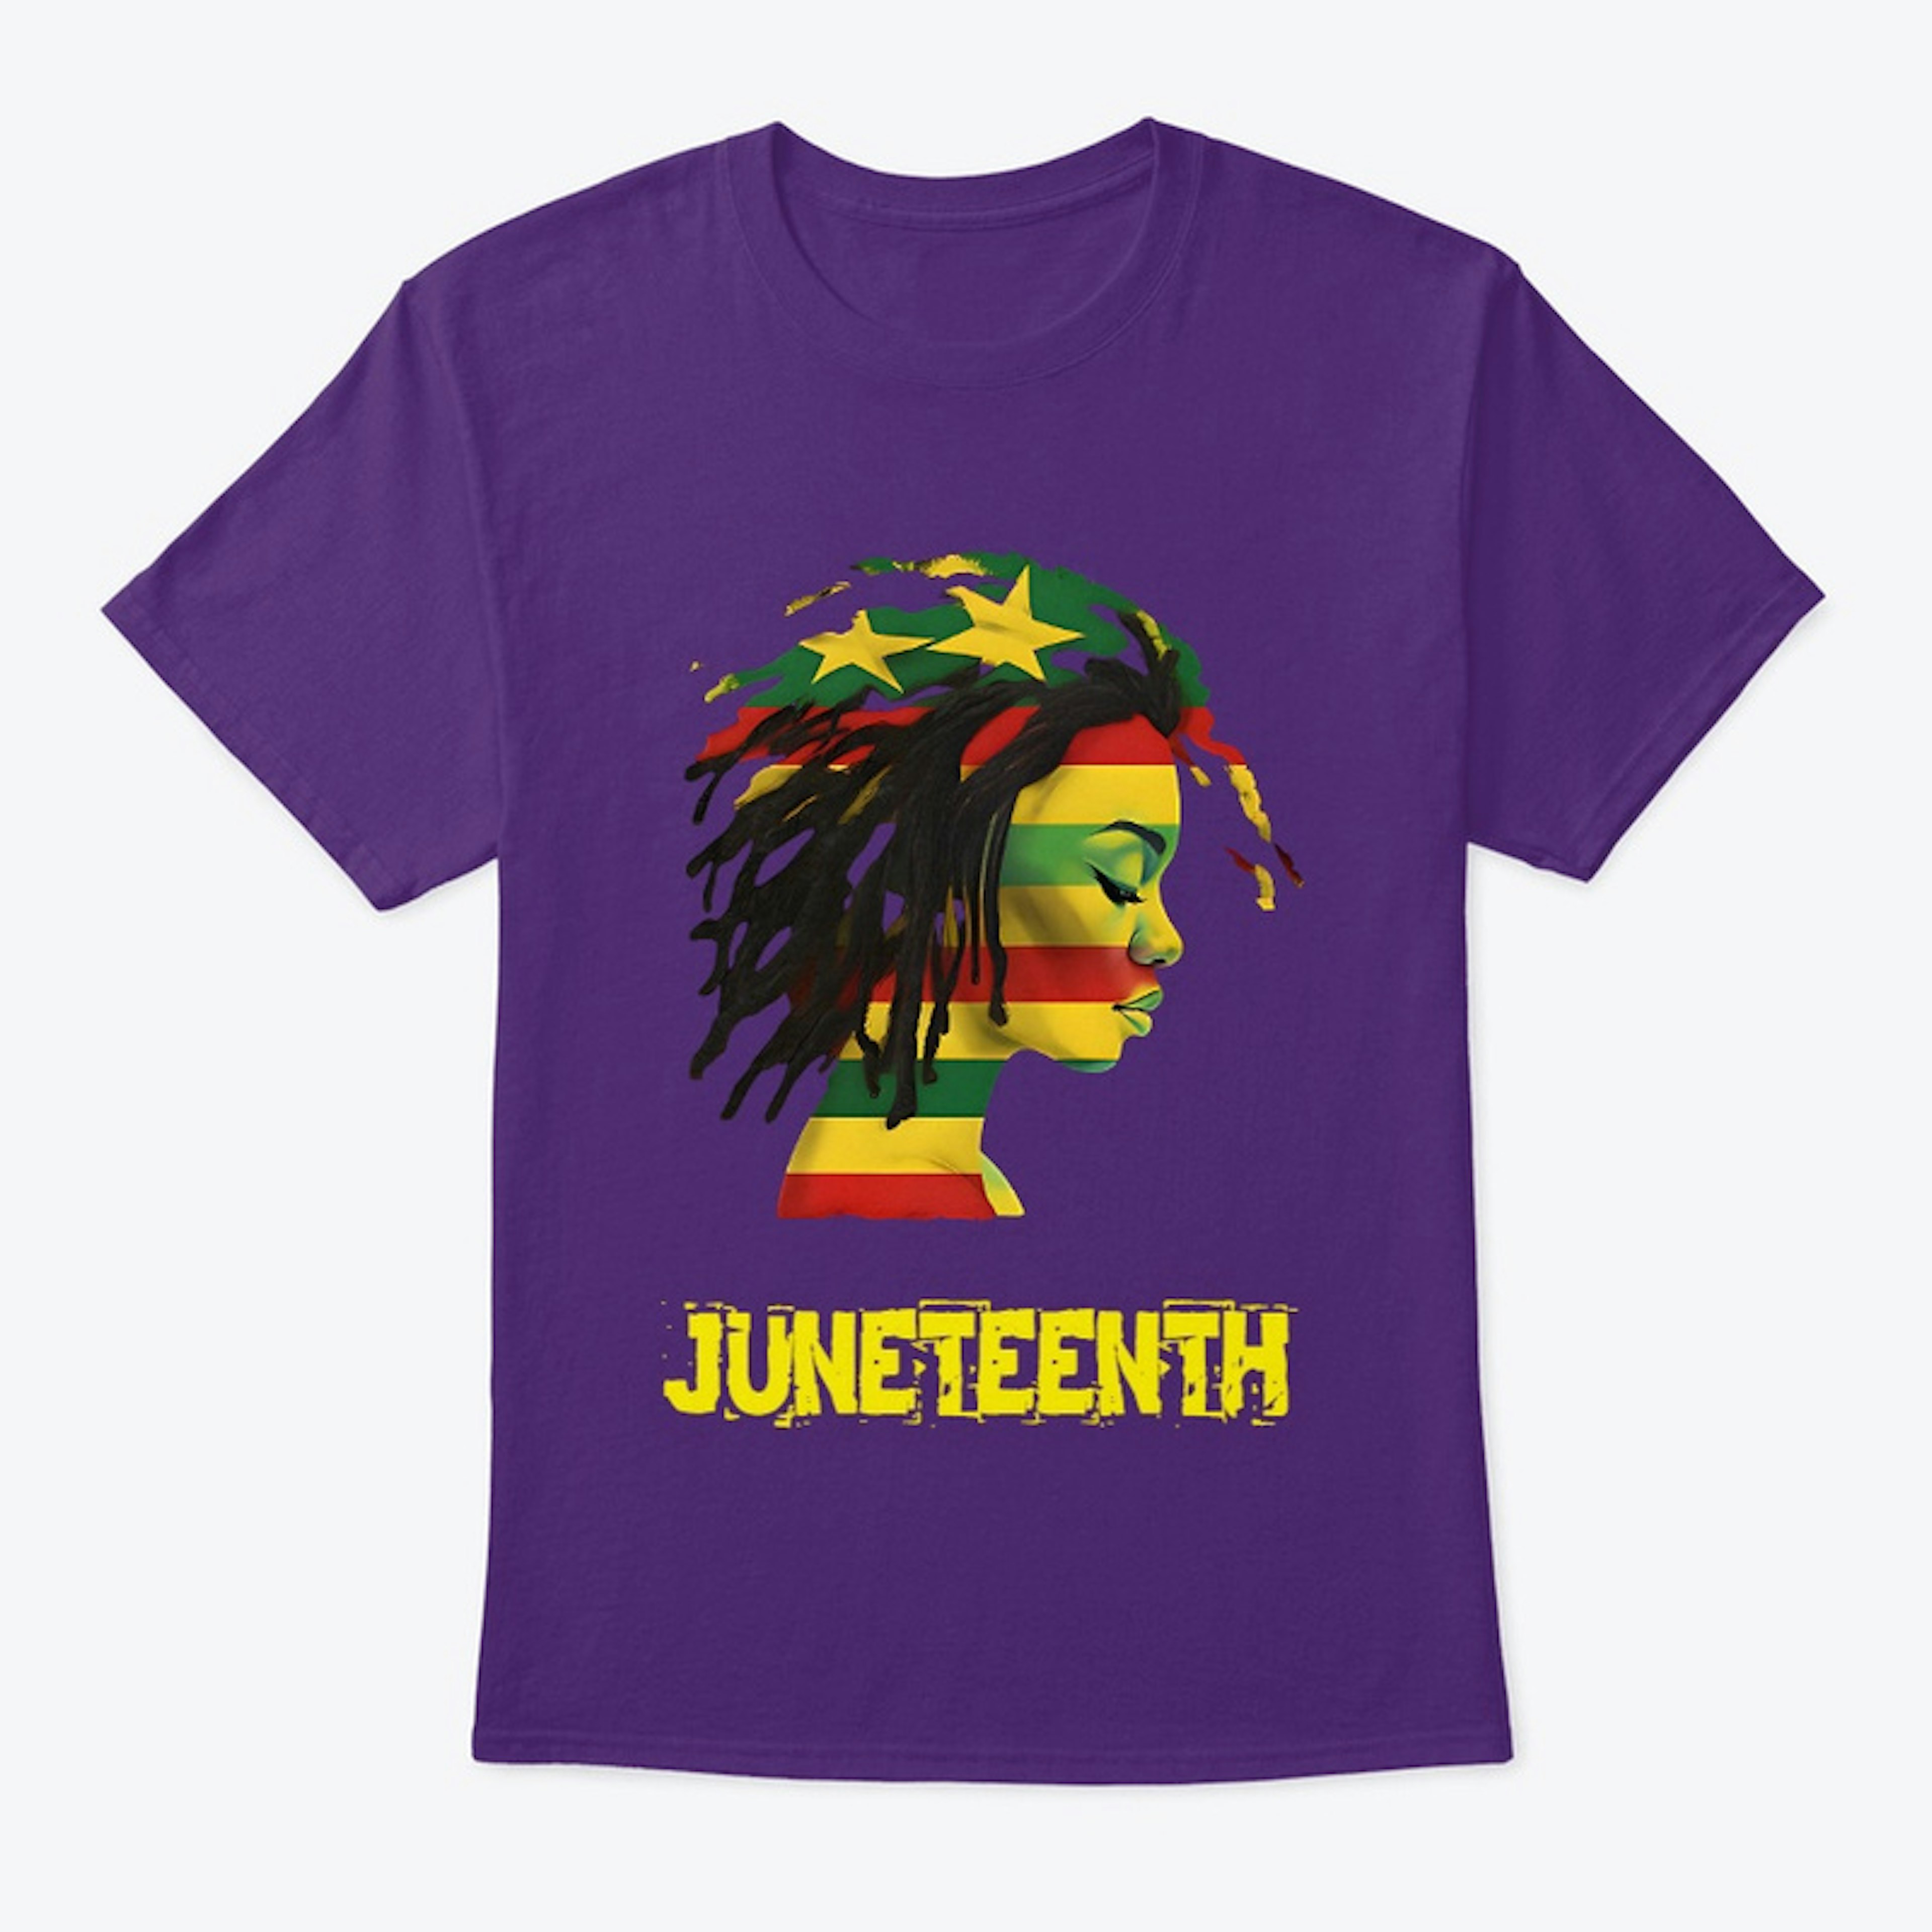 Juneteenth Shirt For Women